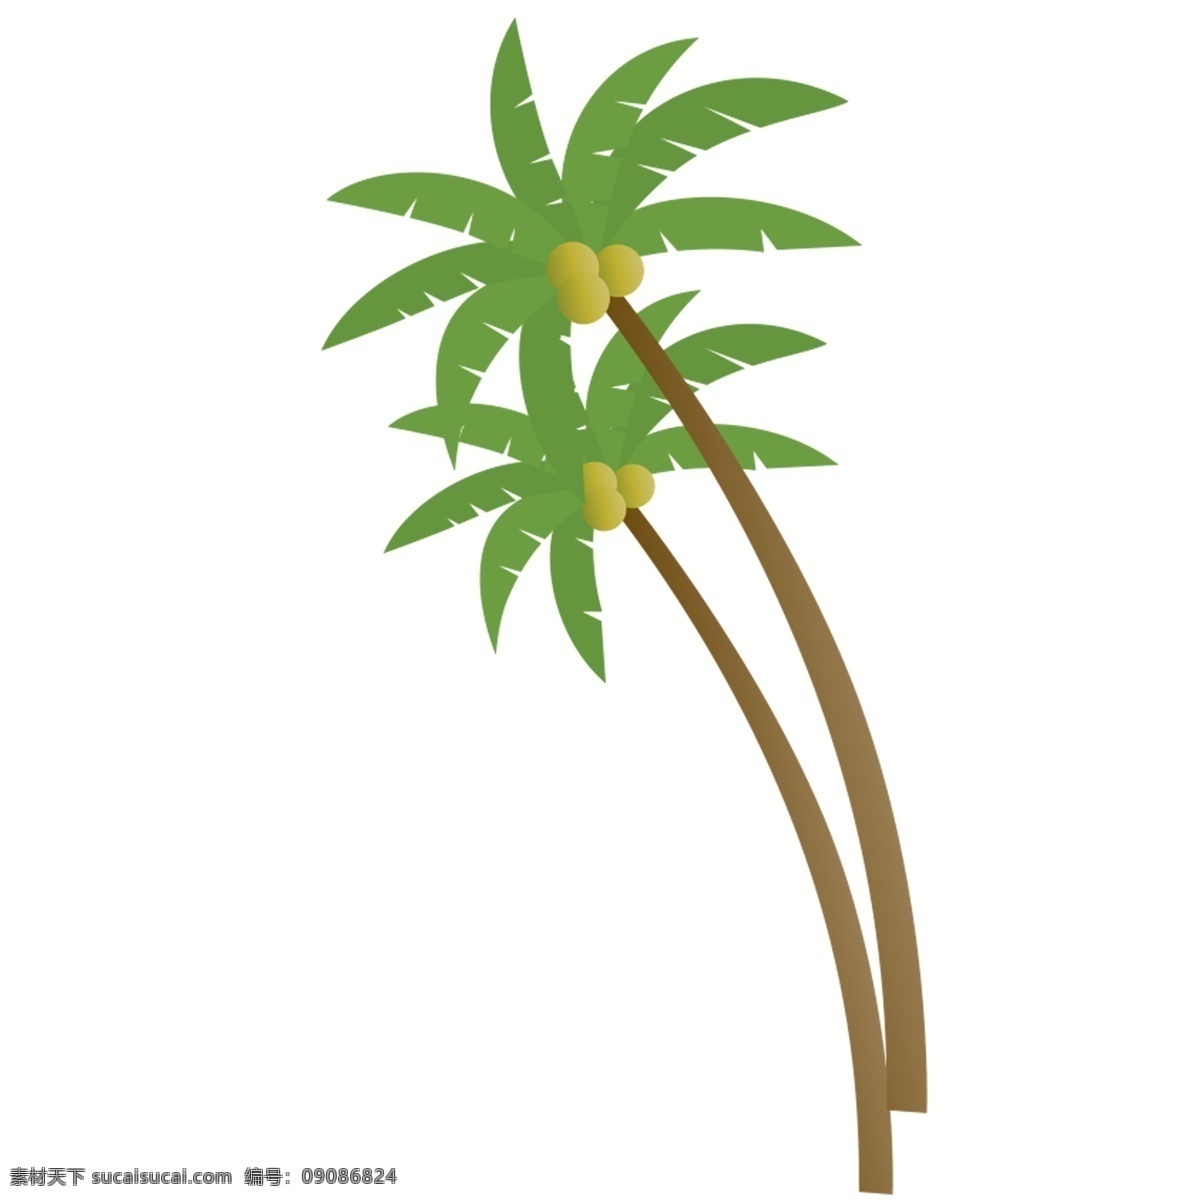 清新 椰子树 装饰 元素 装饰元素 手绘 度假 夏季 海滩 热带 简约